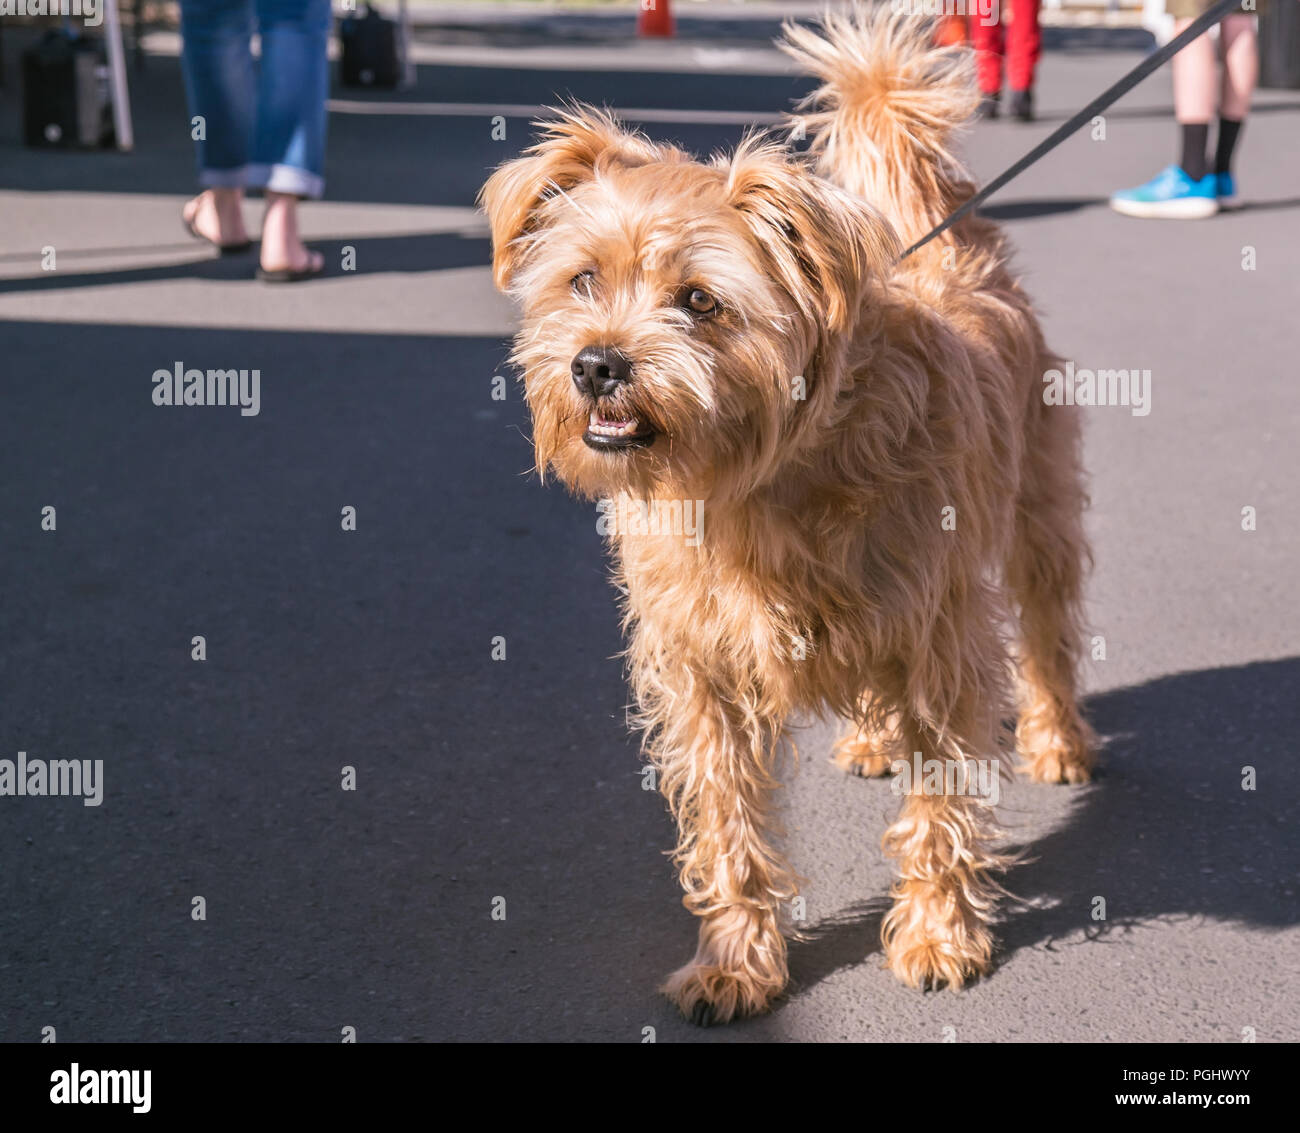 Carino peloso marrone razza cane al guinzaglio in pubblico in un mercato sul marciapiede in Nuova Zelanda, NZ Foto Stock